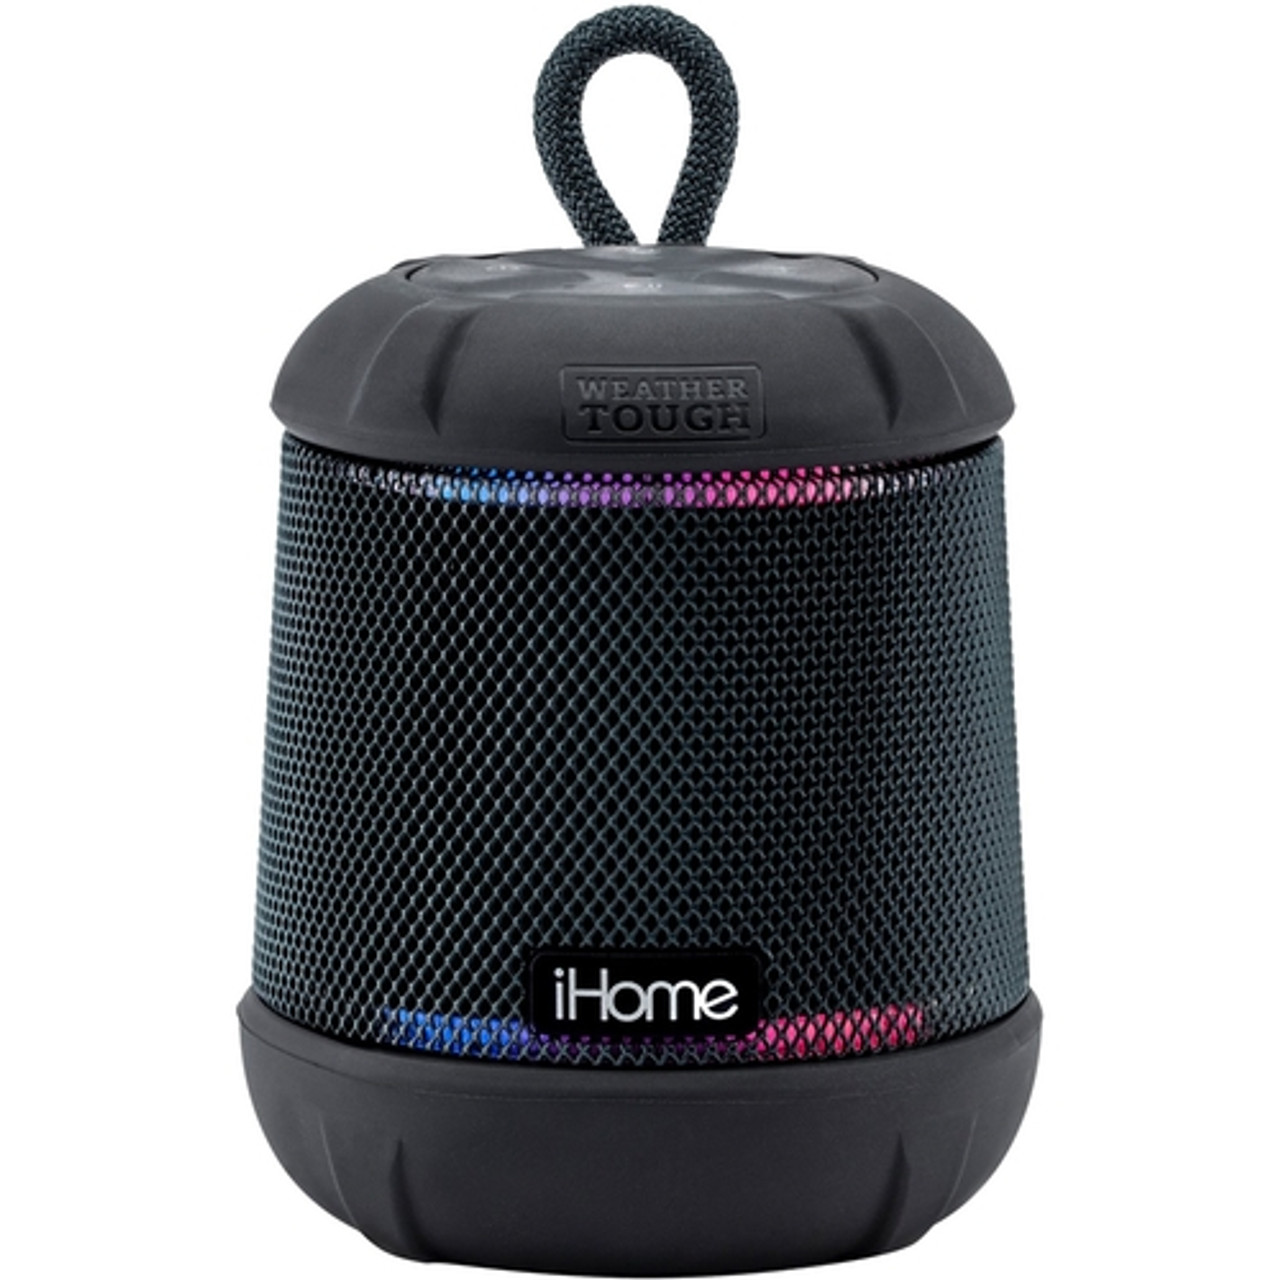 iHome - iBT155 Portable Bluetooth Speaker - Black